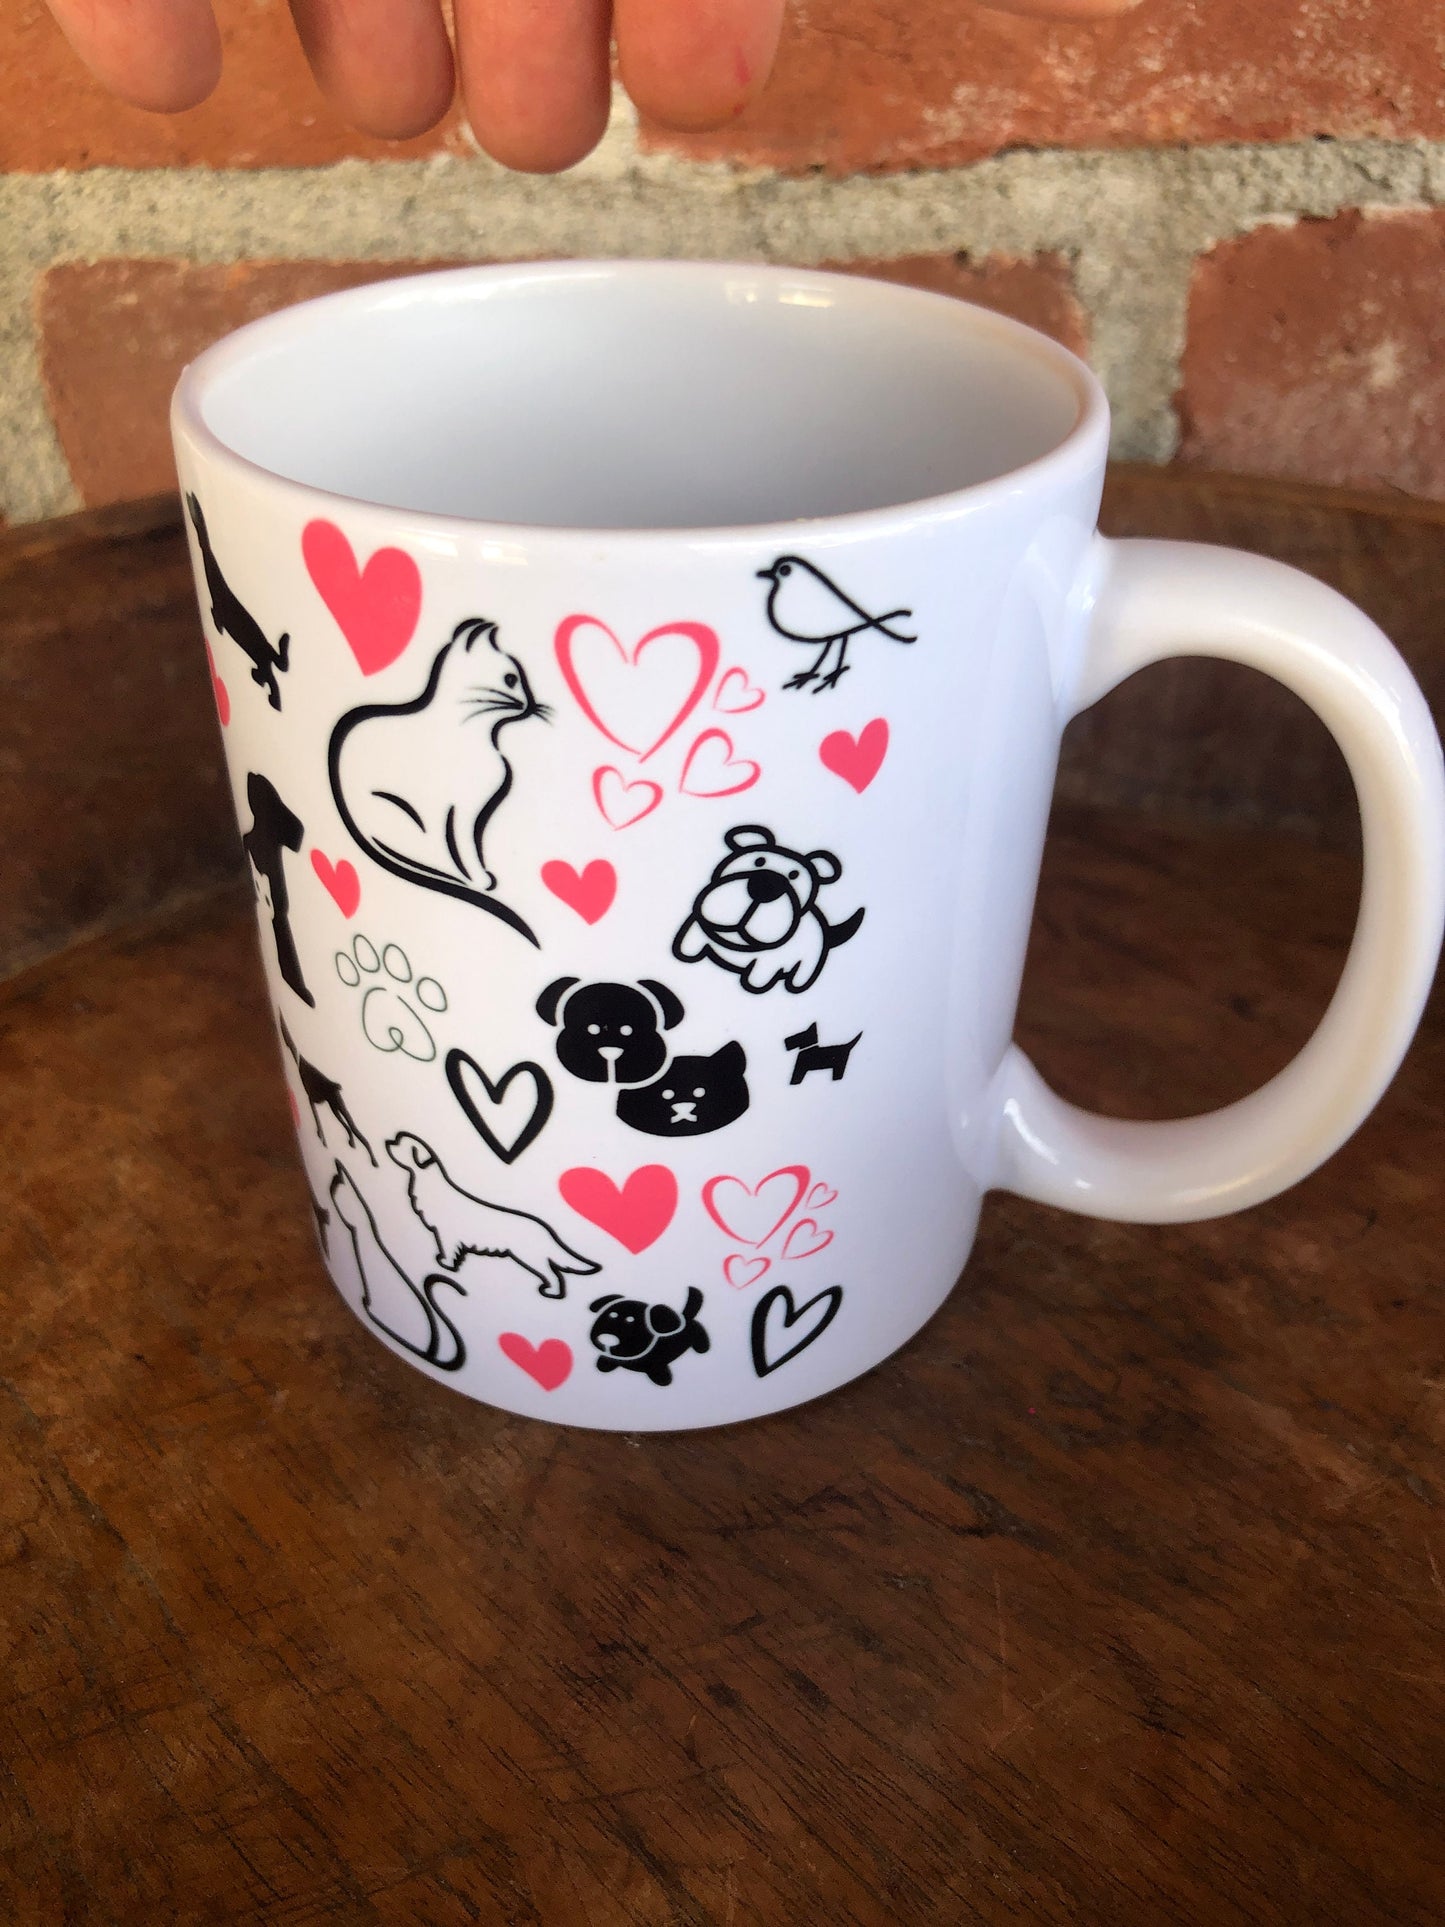 Pet mug/ Veterinarian Gift / fun pet themed mug/Dog Cat Lover gift/ animal lover/ pet themed mug  / Vet tech mug / Cats / Dog with Cat